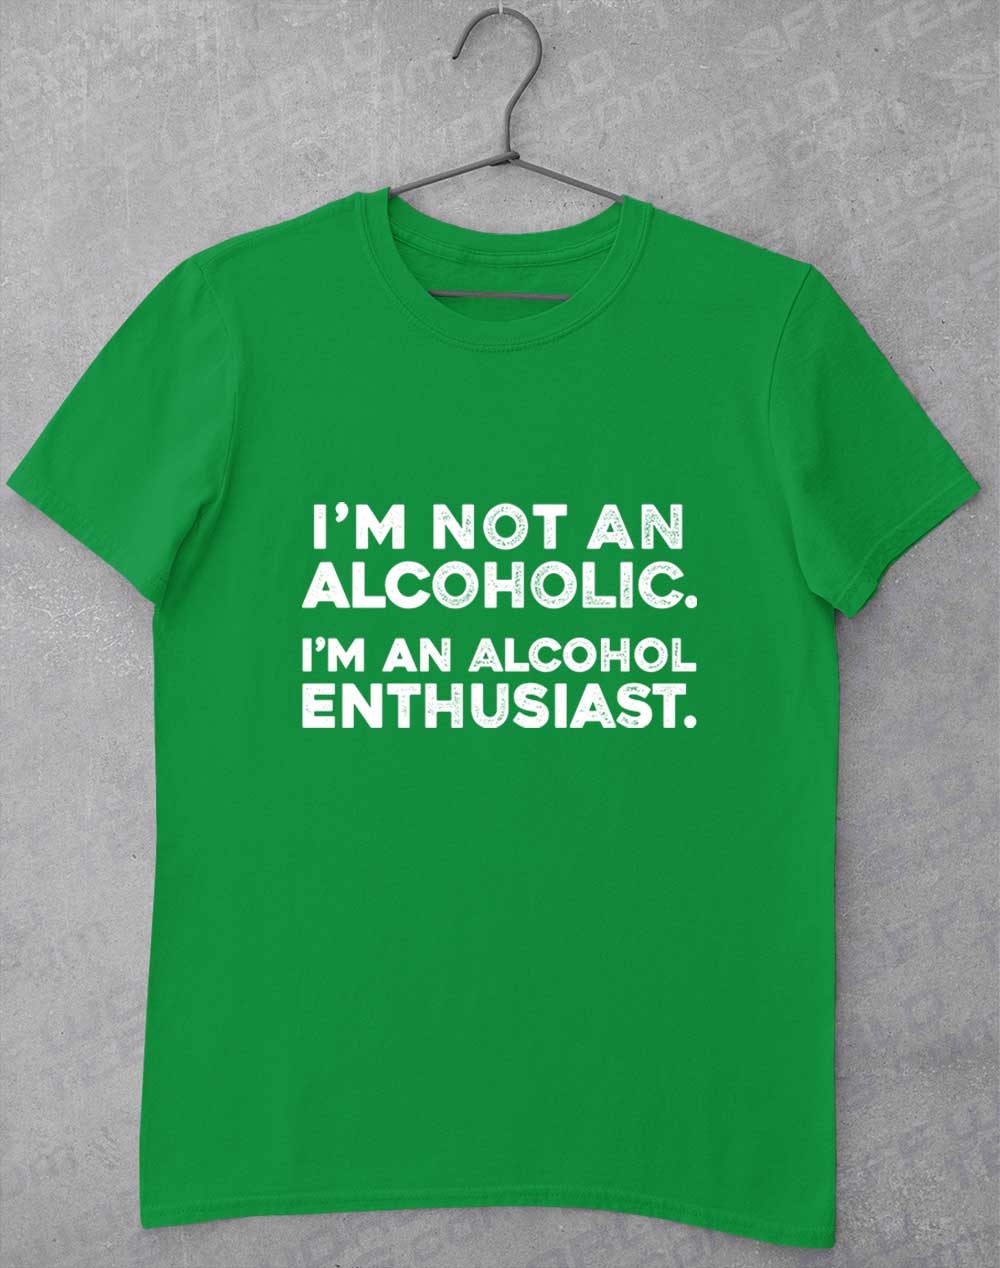 Irish Green - Not an Alcoholic T-Shirt